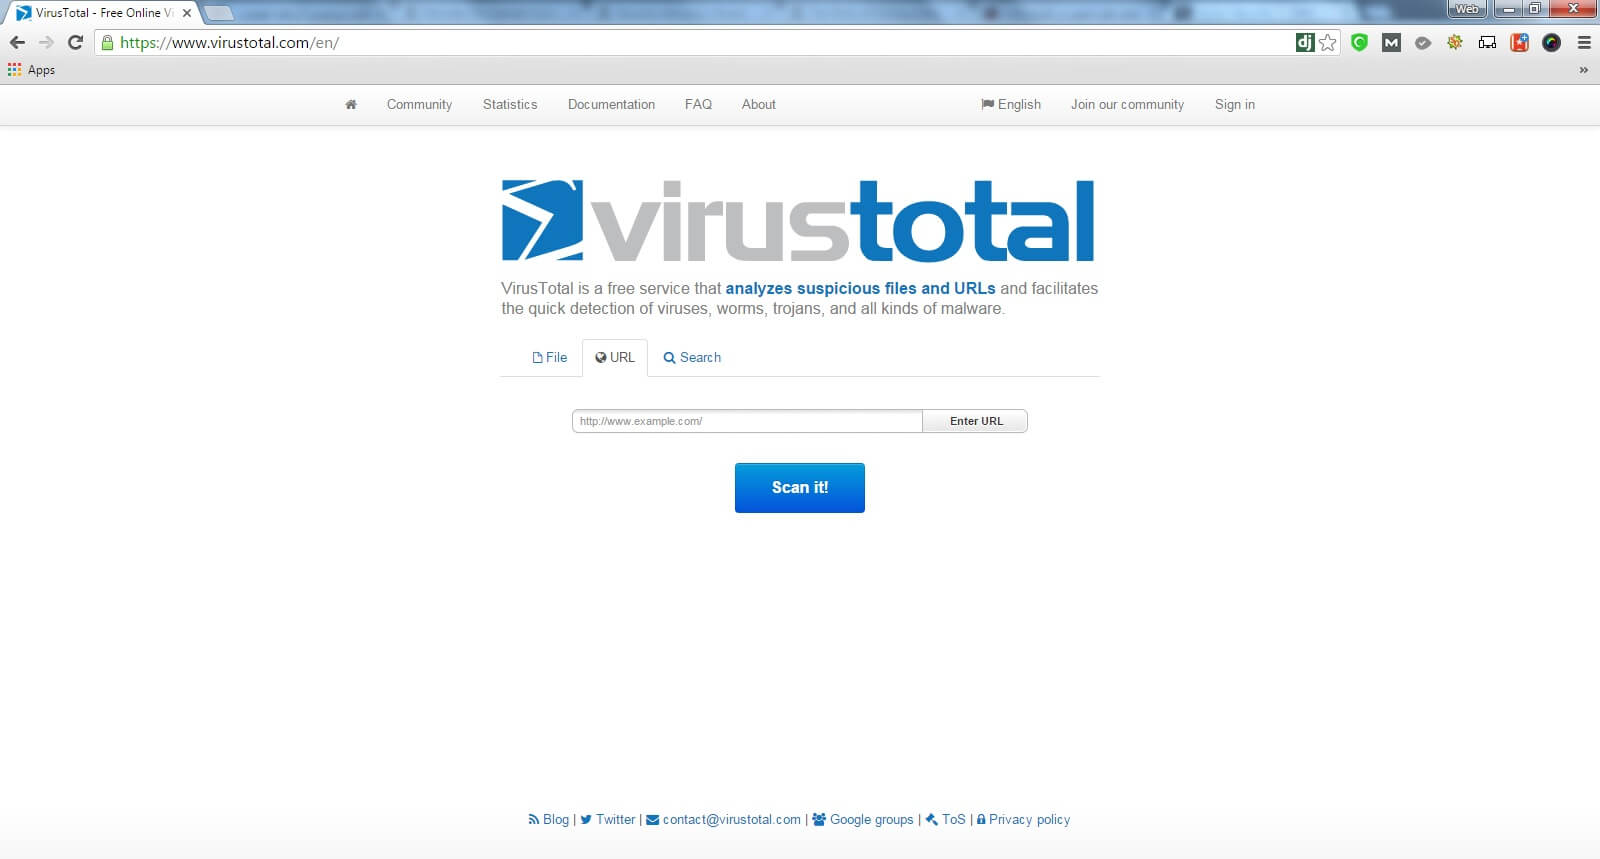 virustotal-homepage url